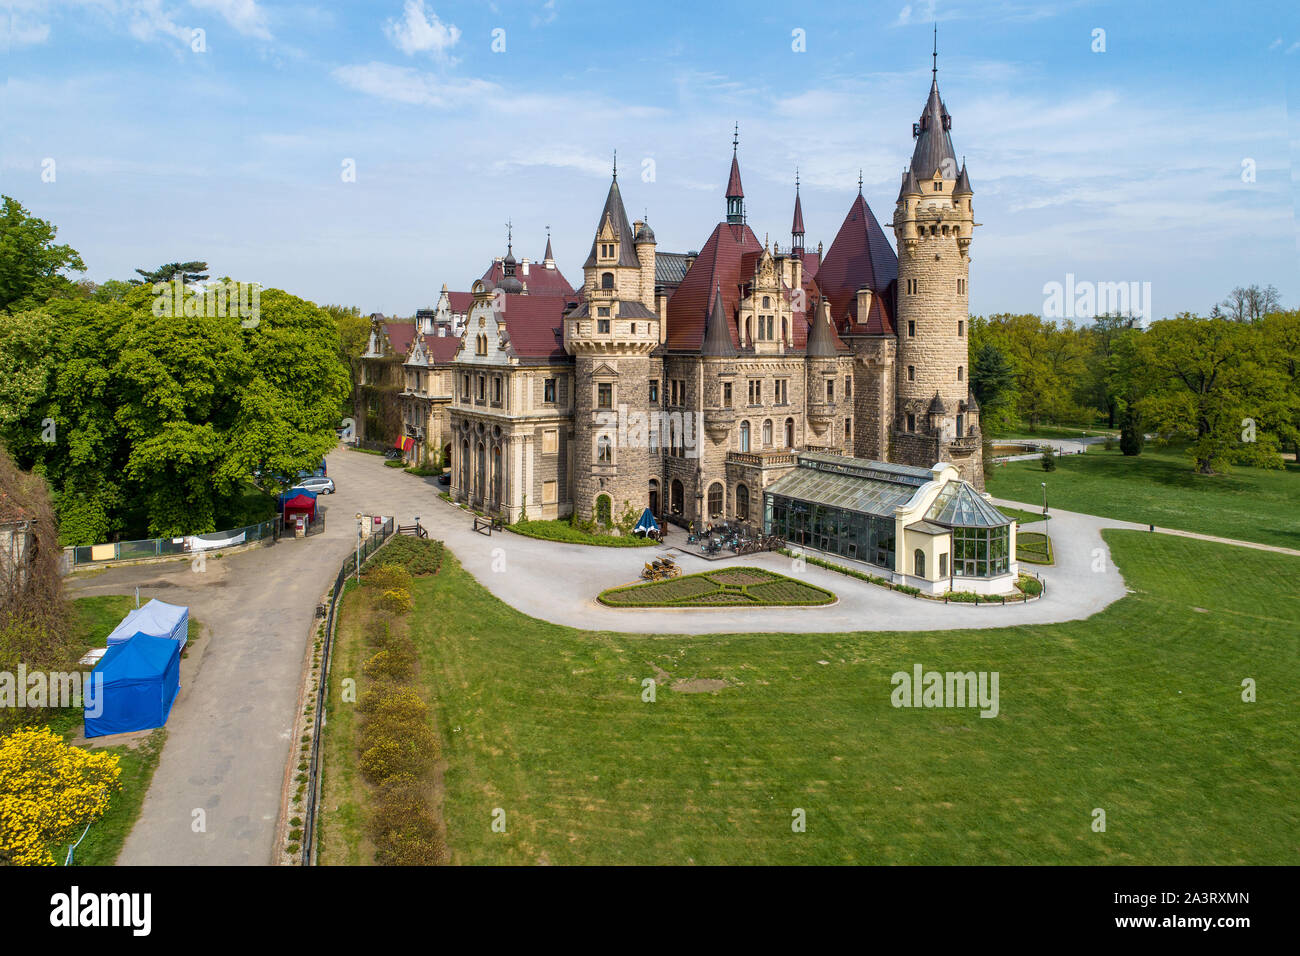 Favoloso castello storico di Moszna nei pressi di Opole, Slesia, Polonia. Costruito nel XVII secolo, estesa da 1900 a 1914 Foto Stock